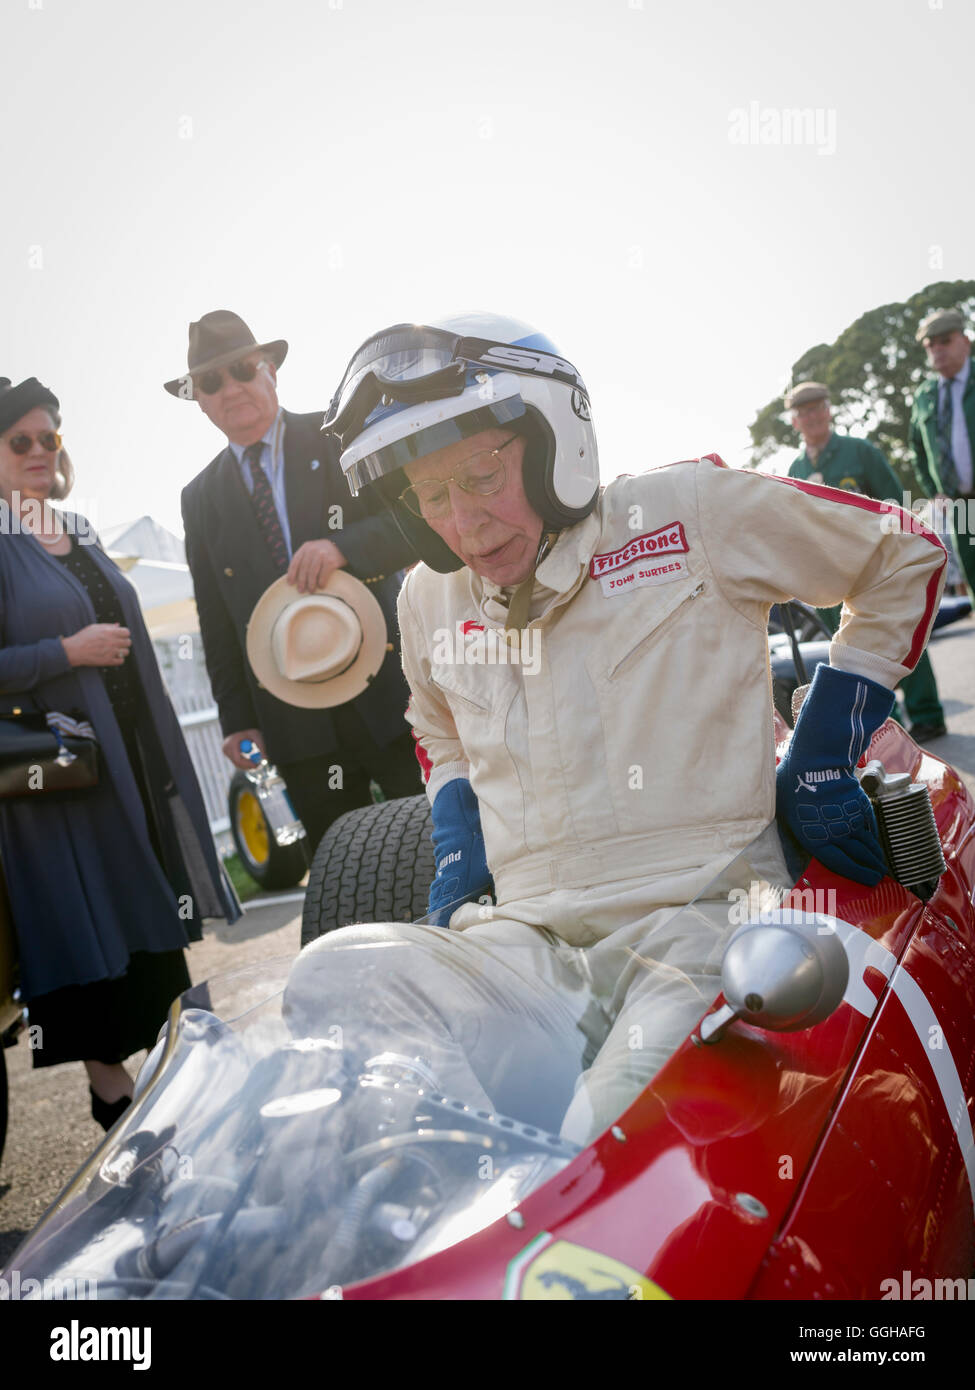 John Surtees im 1964 Ferrari 158, Goodwood Revival 2014, Rennsport, Oldtimer, Goodwood, Chichester, Sussex, England, Gre Stockfoto